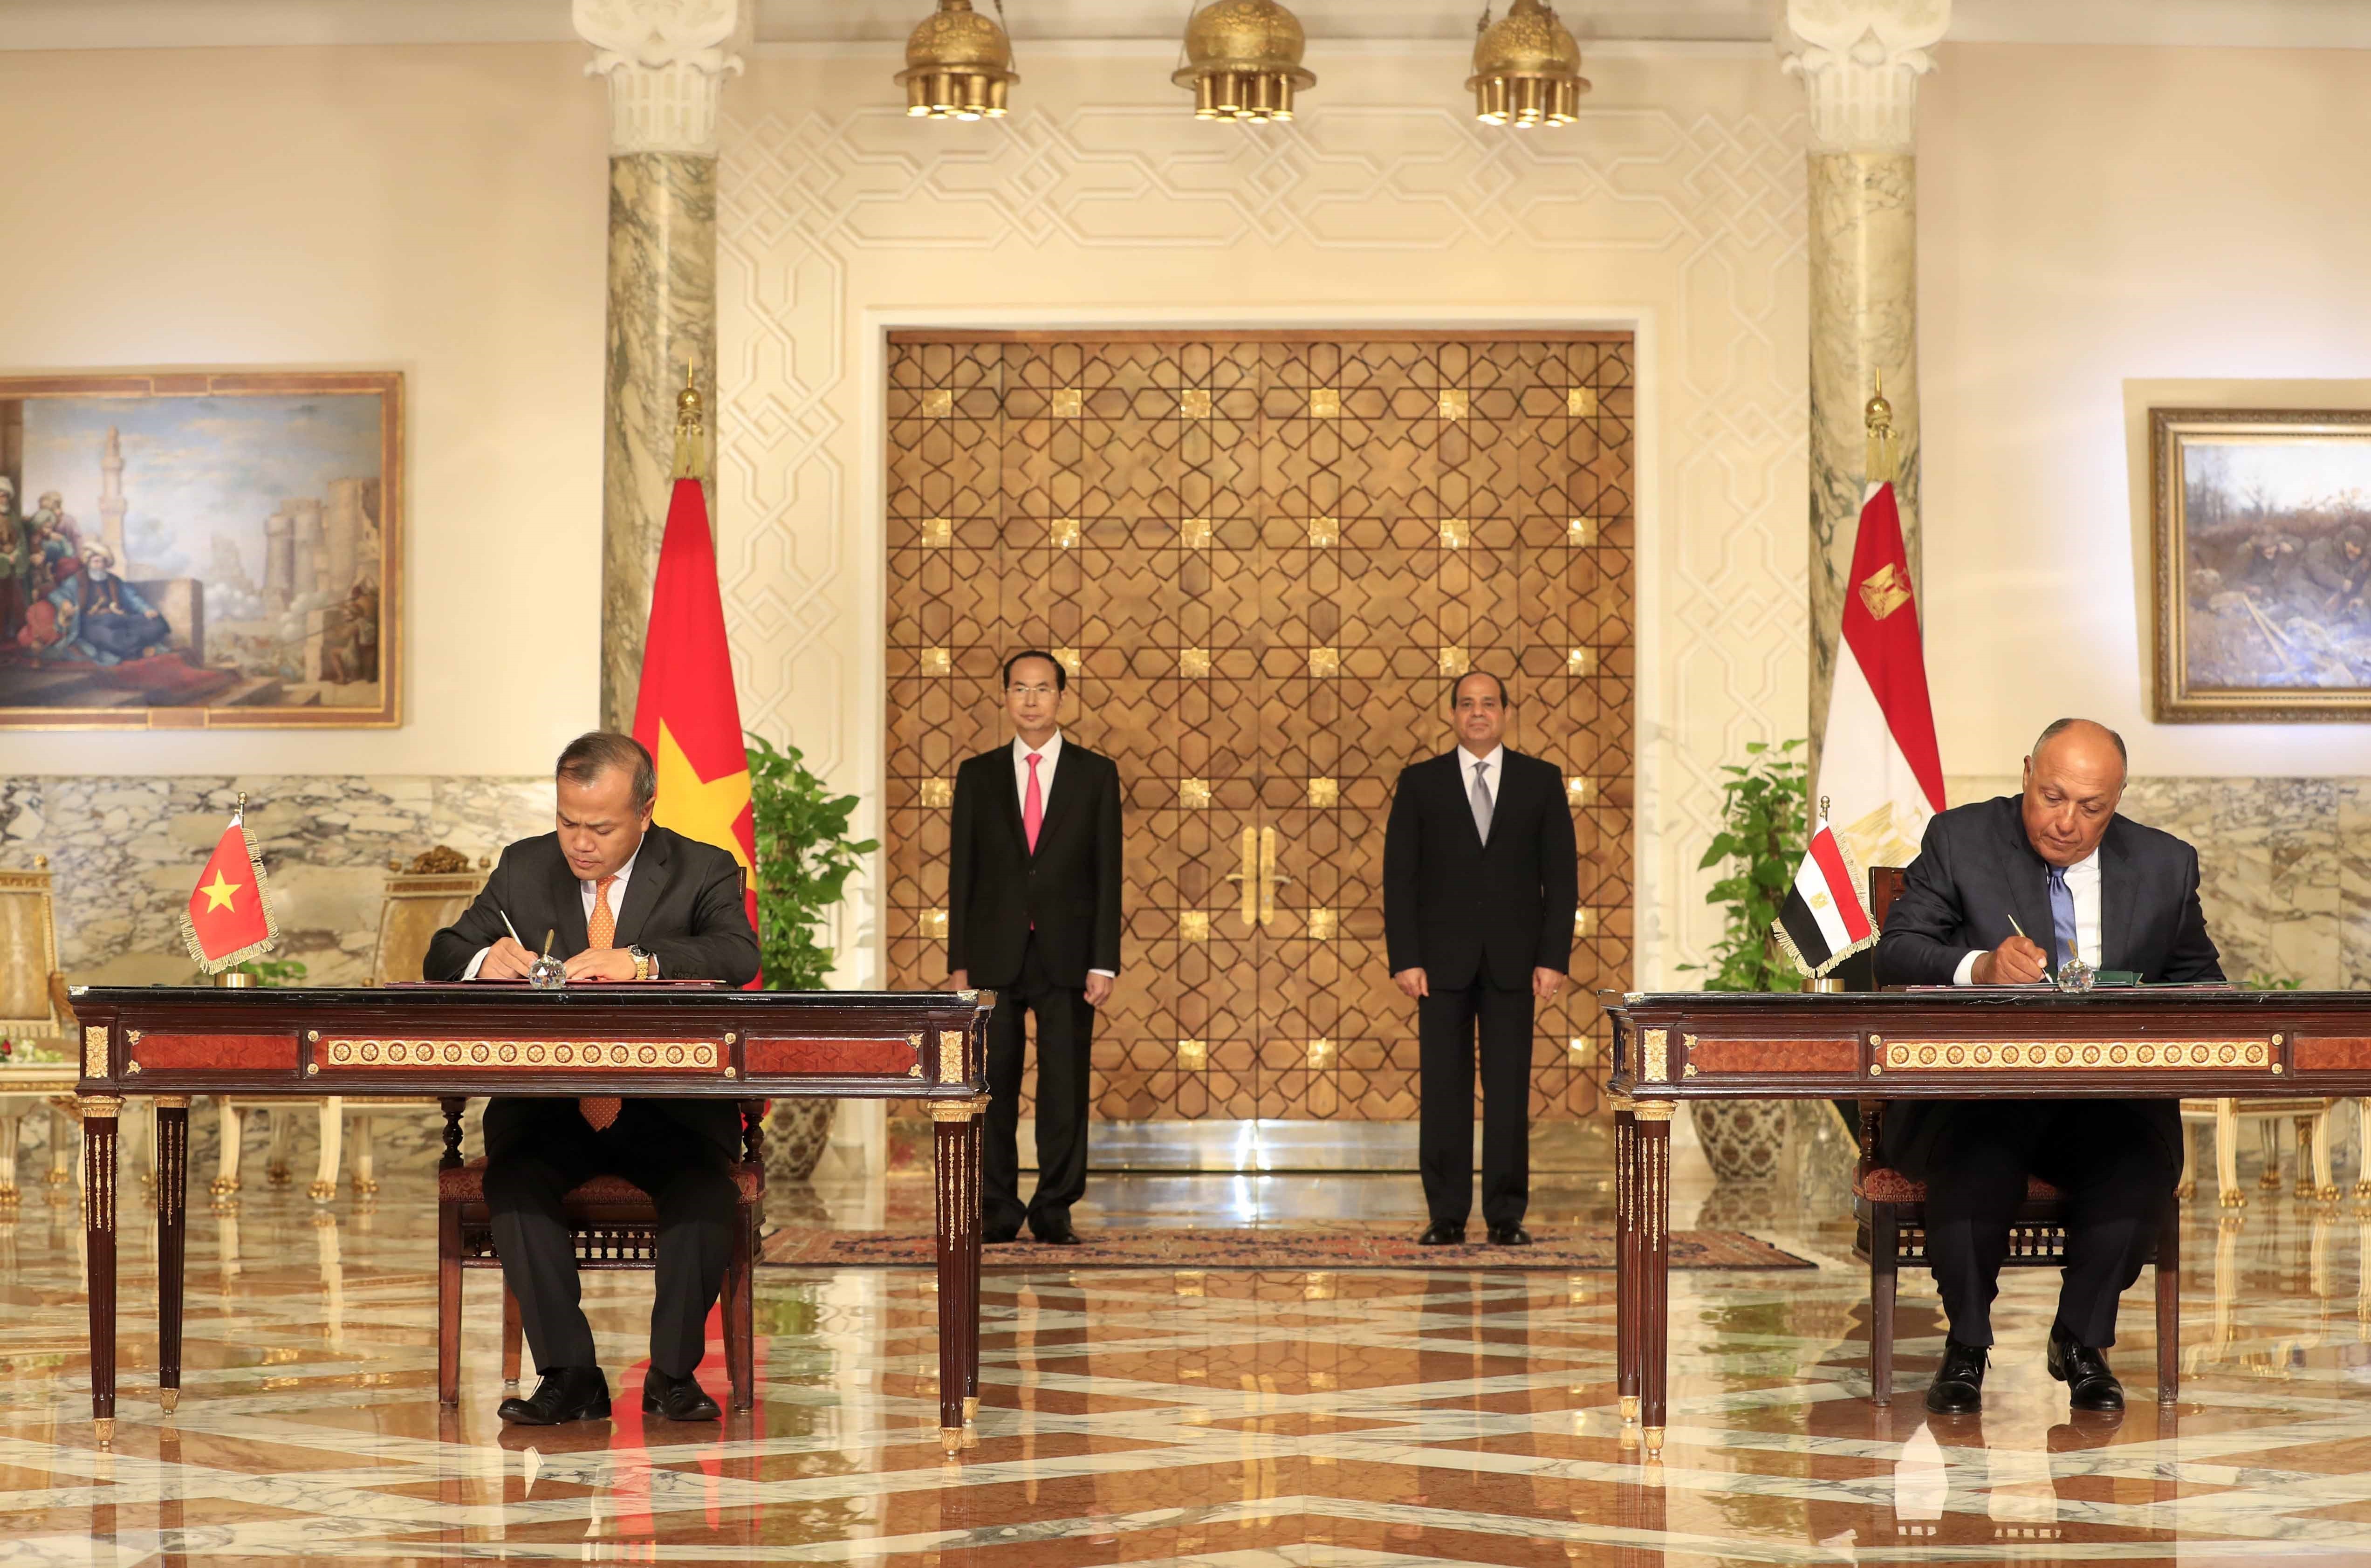 La président Tran Dai Quang et son homologue égyptien Abdel Fattah al-Sissi assistent à la cérémonie de signature de plusieurs documents de coopération bilatérale. Photo: VNA